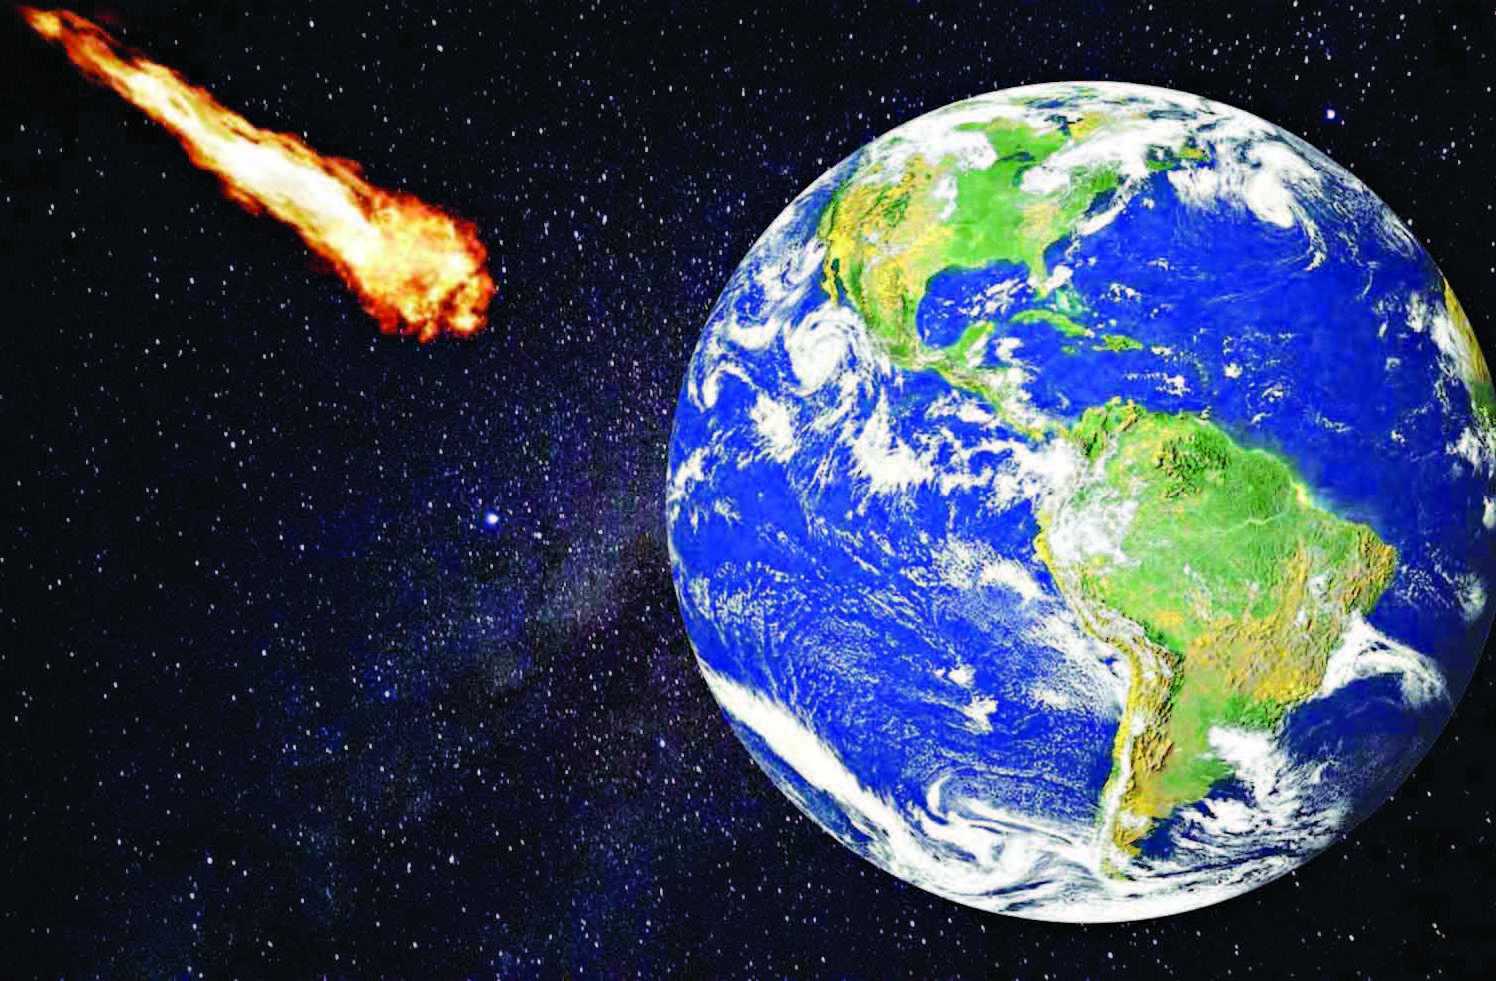 Tiongkok Akan Bangun Sistem Pertahanan untuk Tangkal Asteroid